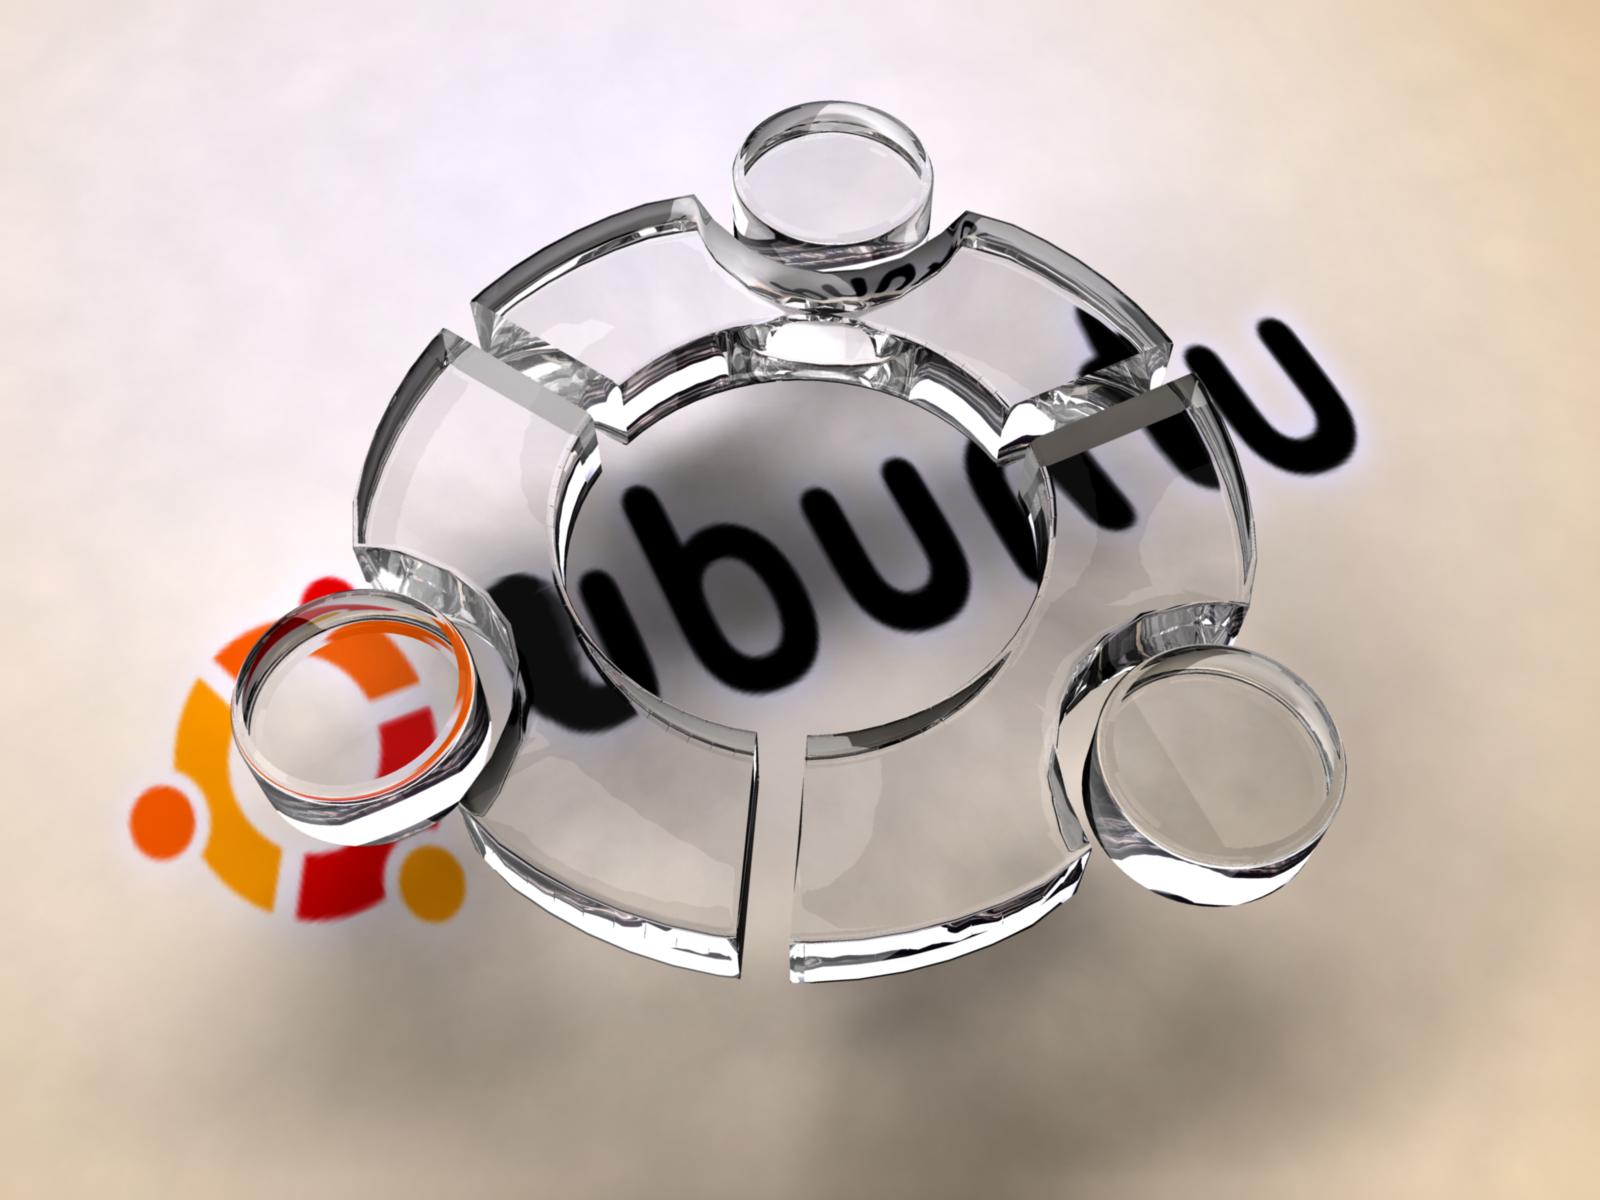 Fond d'ecran Ubuntu